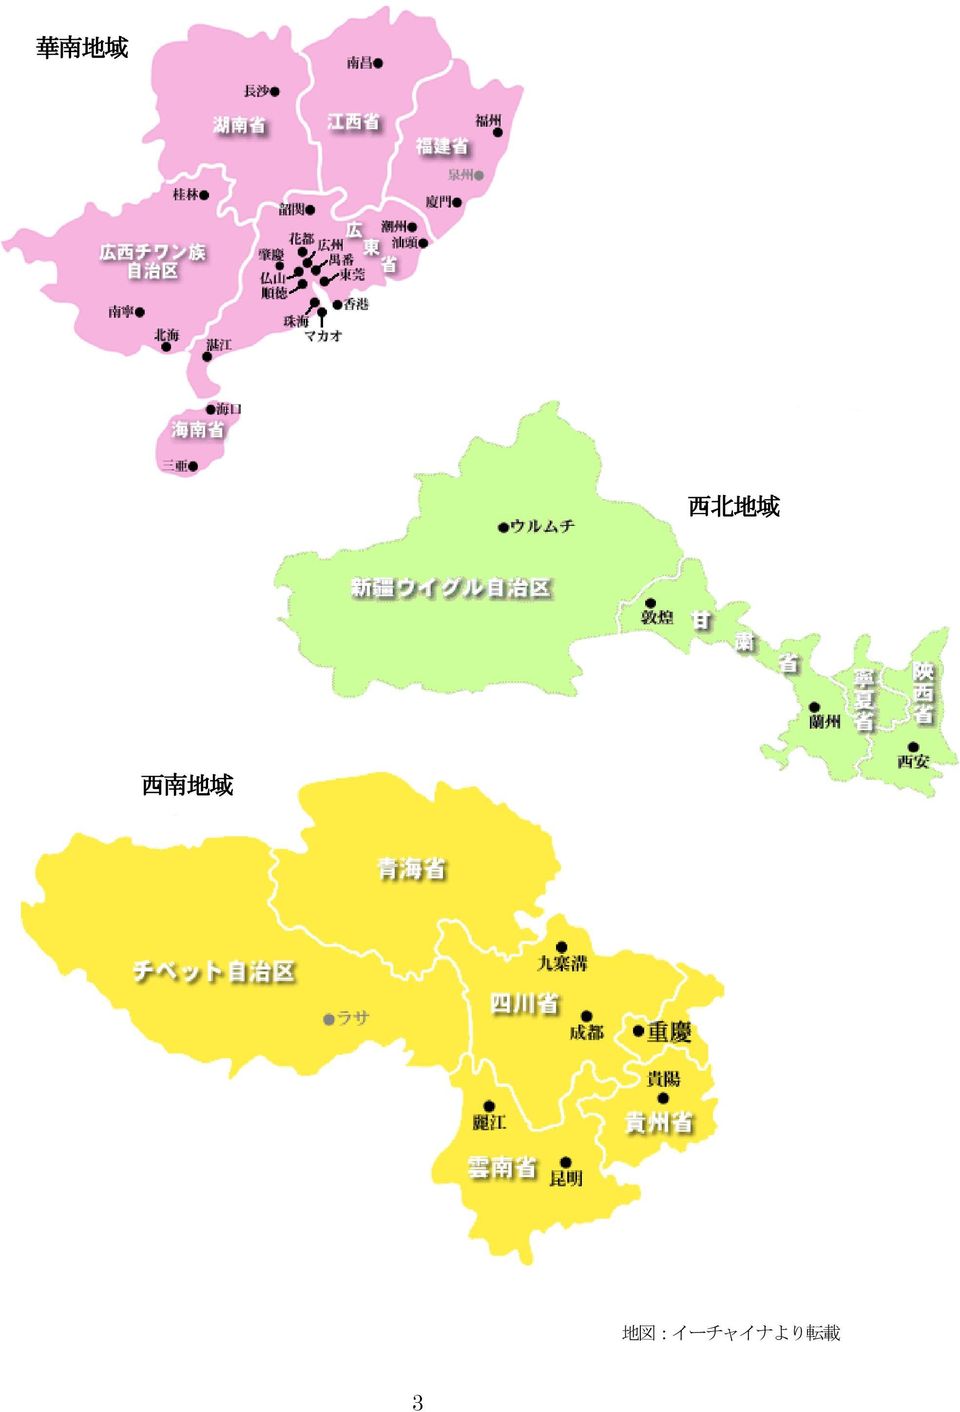 地 域 地 図